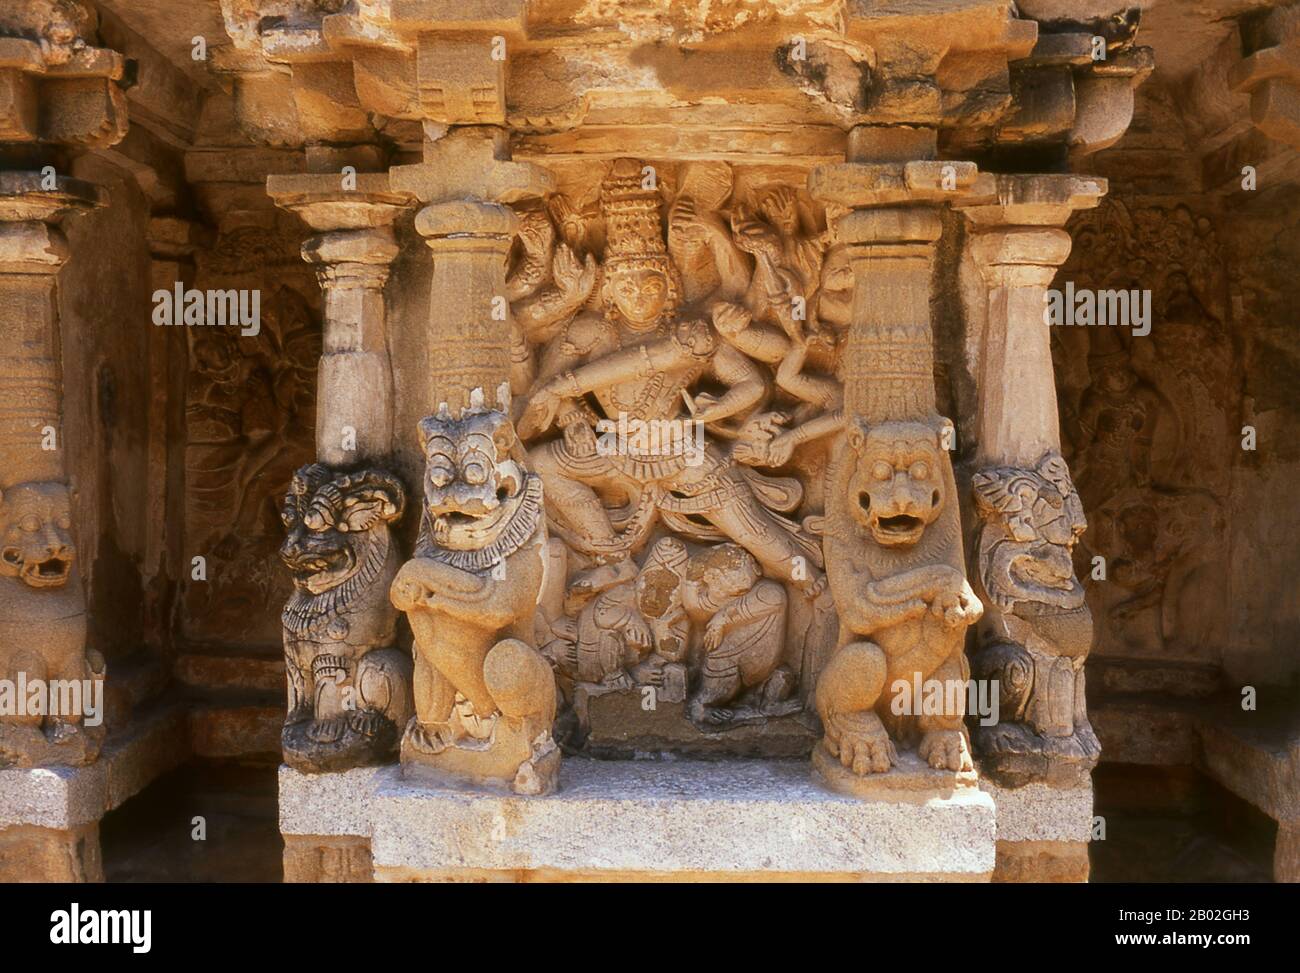 Der Kailasanathar (Herr des kosmischen Berges) Tempel ist ein Hindutempel im dravidischen Baustil. Sie ist dem gott Shiva gewidmet und wurde zwischen 685 und 705 CE vom Pallava-Dynastie-Machthaber Rajasimha erbaut. Der Bau wurde von Rajasimhas Sohn Mahendra Varma abgeschlossen. Stockfoto